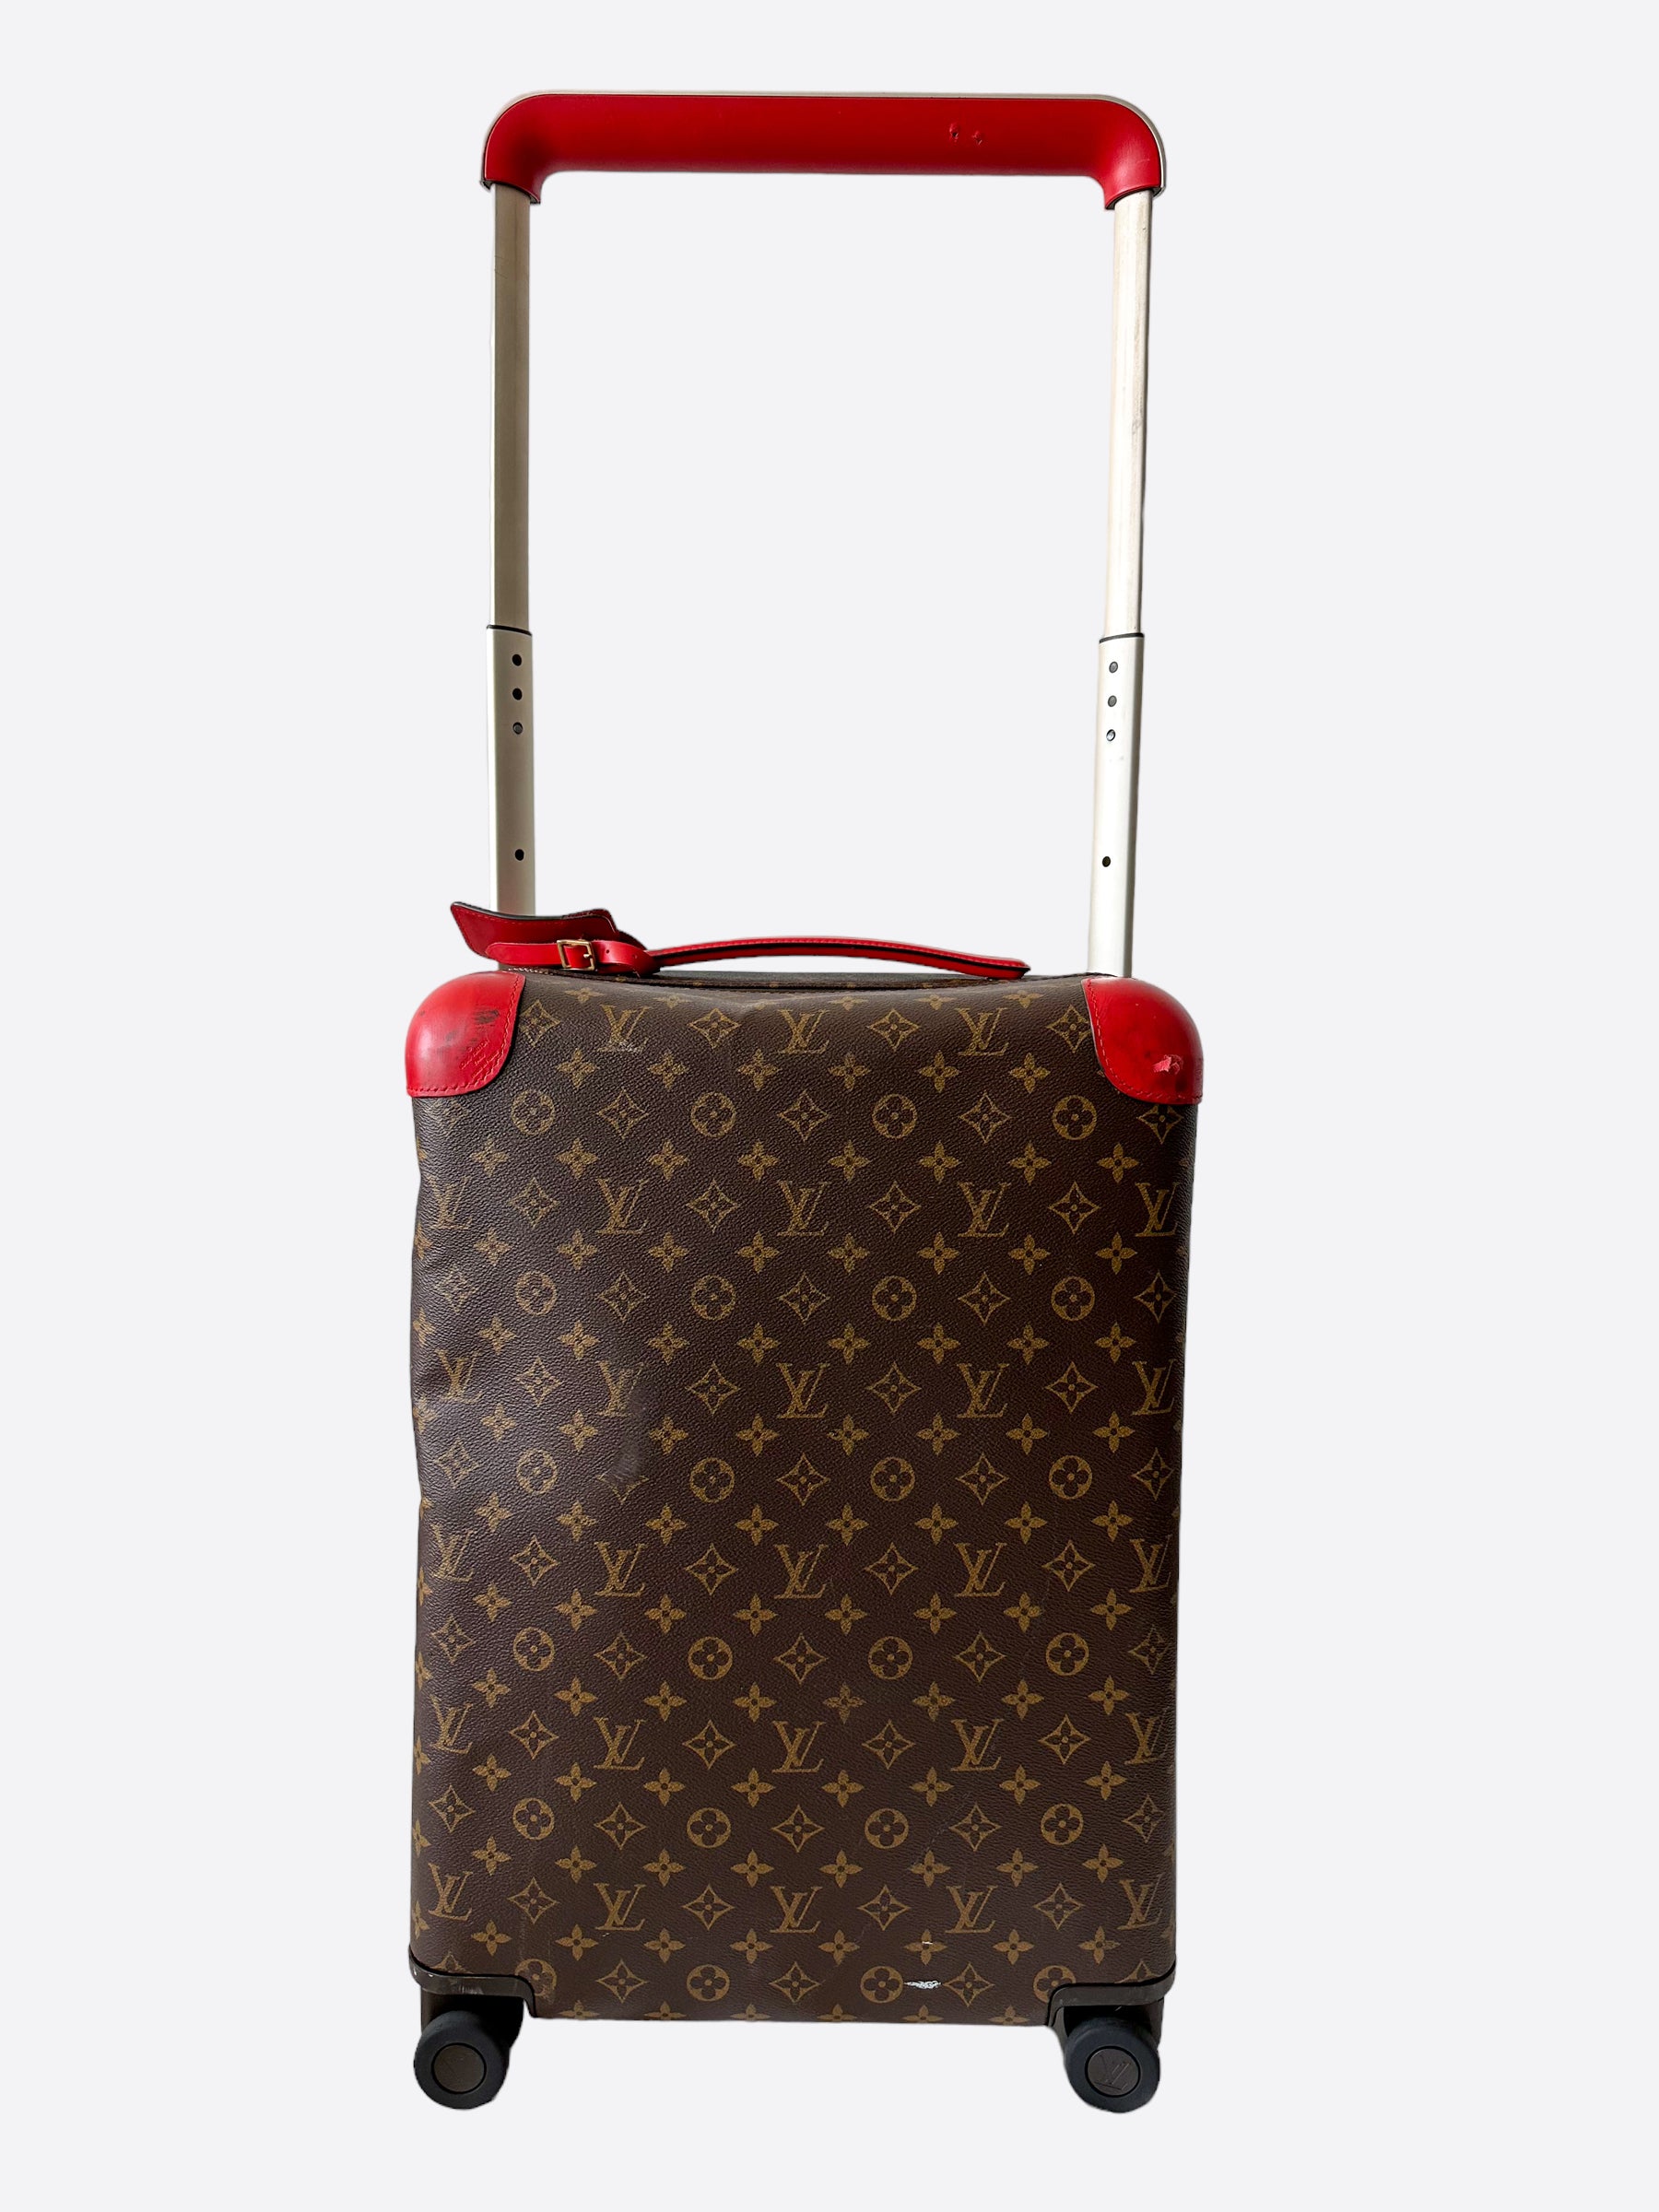 New Colors & Canvas Enhance Louis Vuitton Horizon Soft Luggage